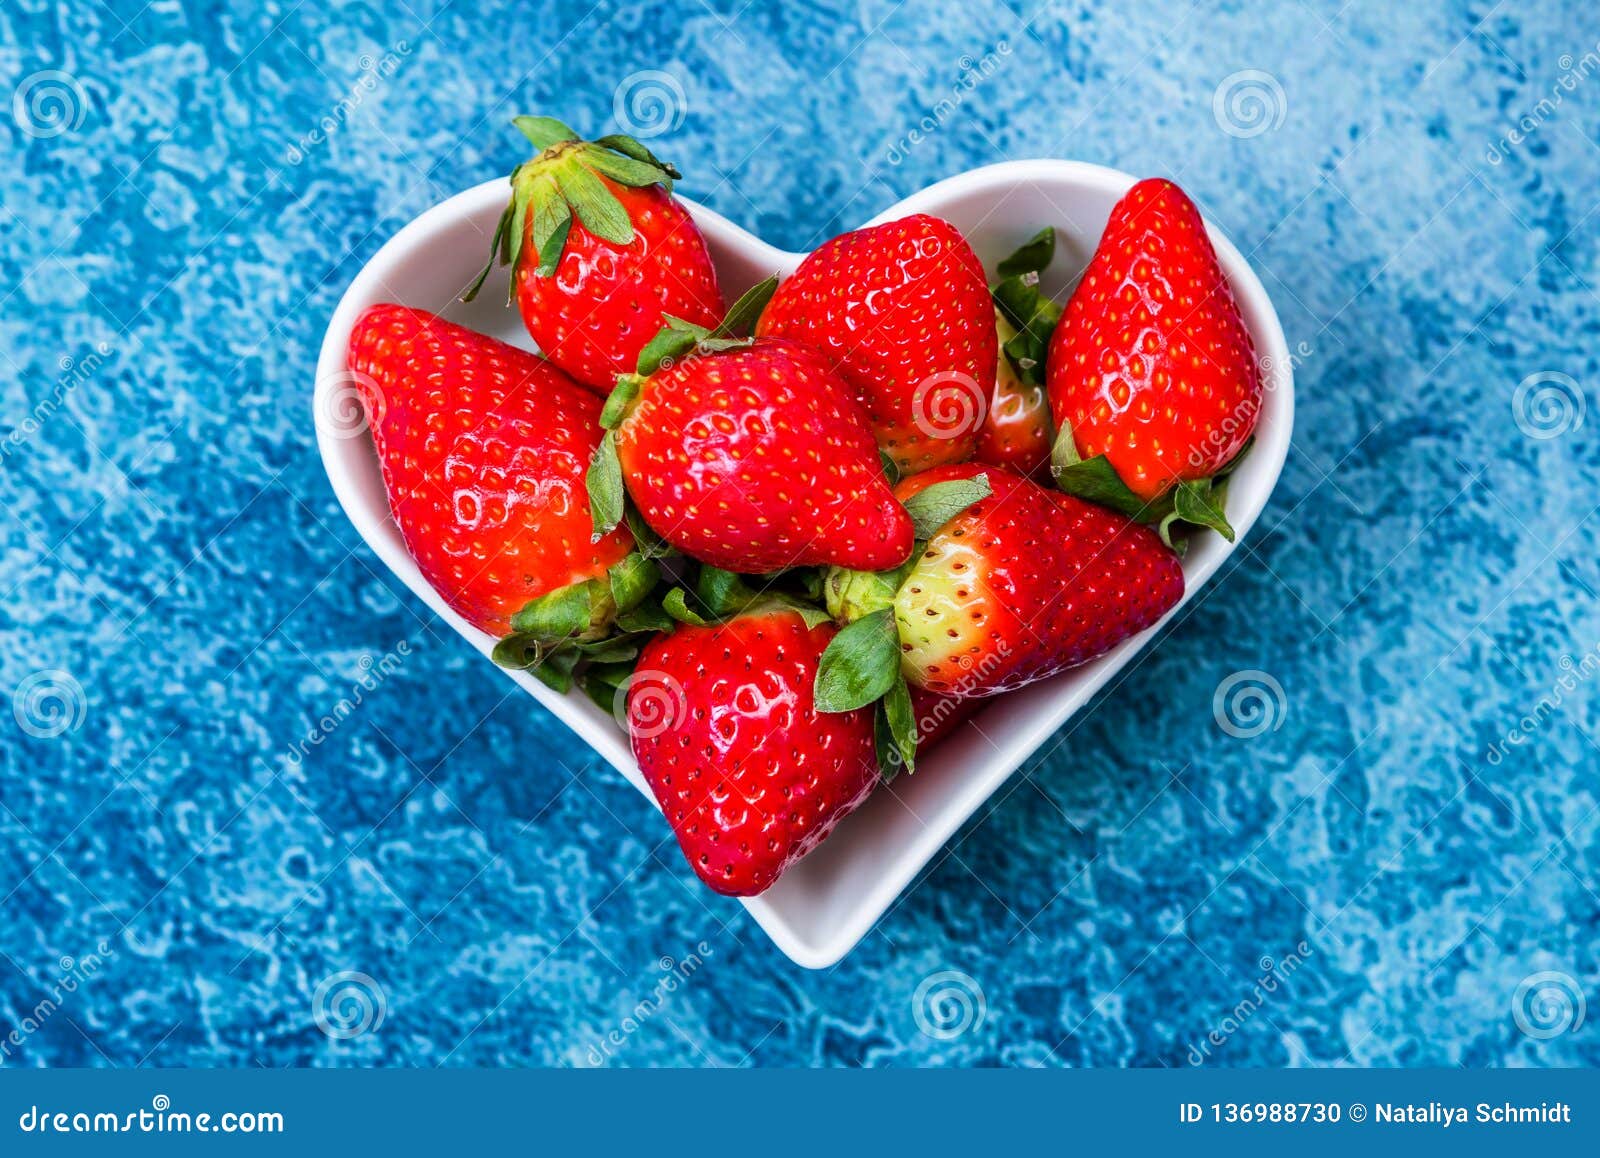 复古外观草莓心。复古的心形，由红草莓制成，白色水果/蔬菜免费下载_jpg格式_2049像素_编号41894060-千图网